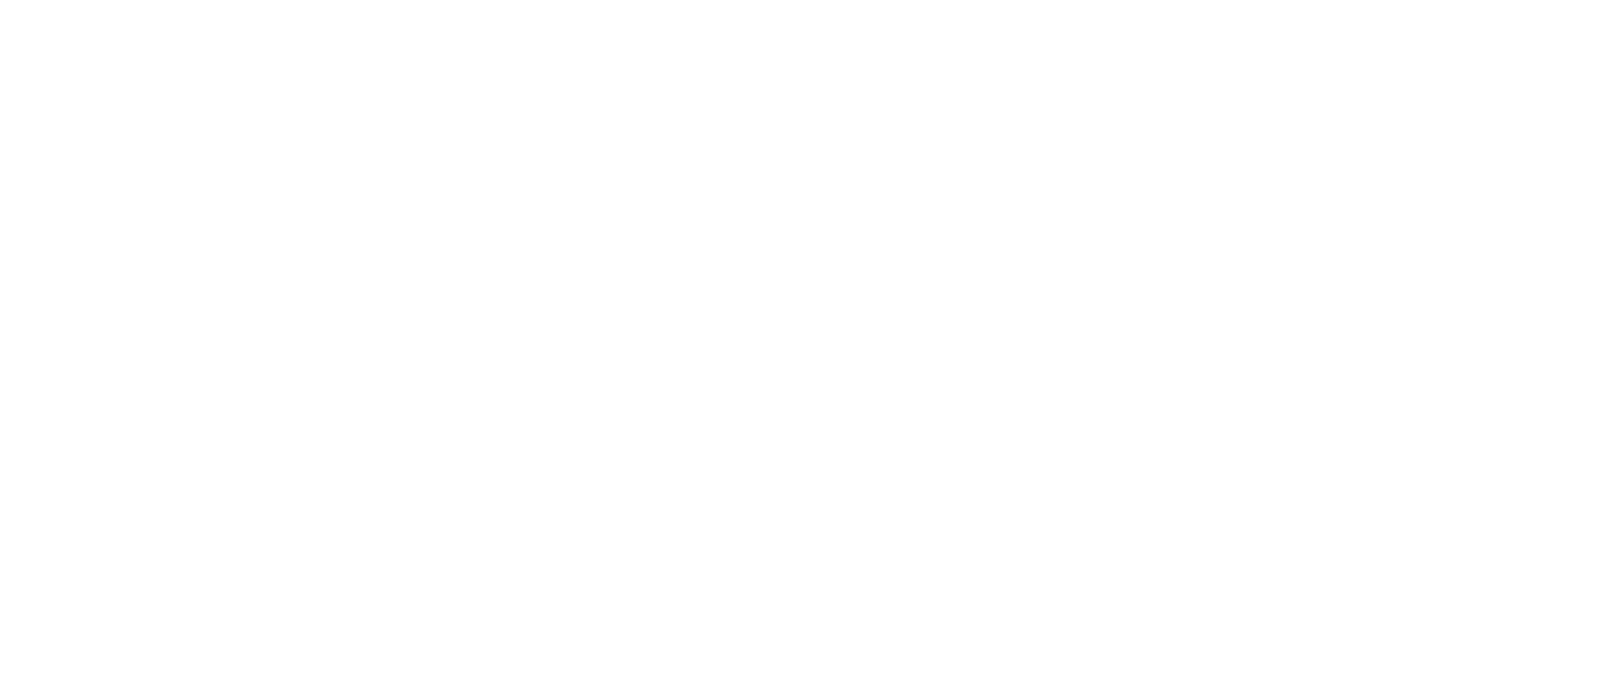 Dya logo final white logo 2021